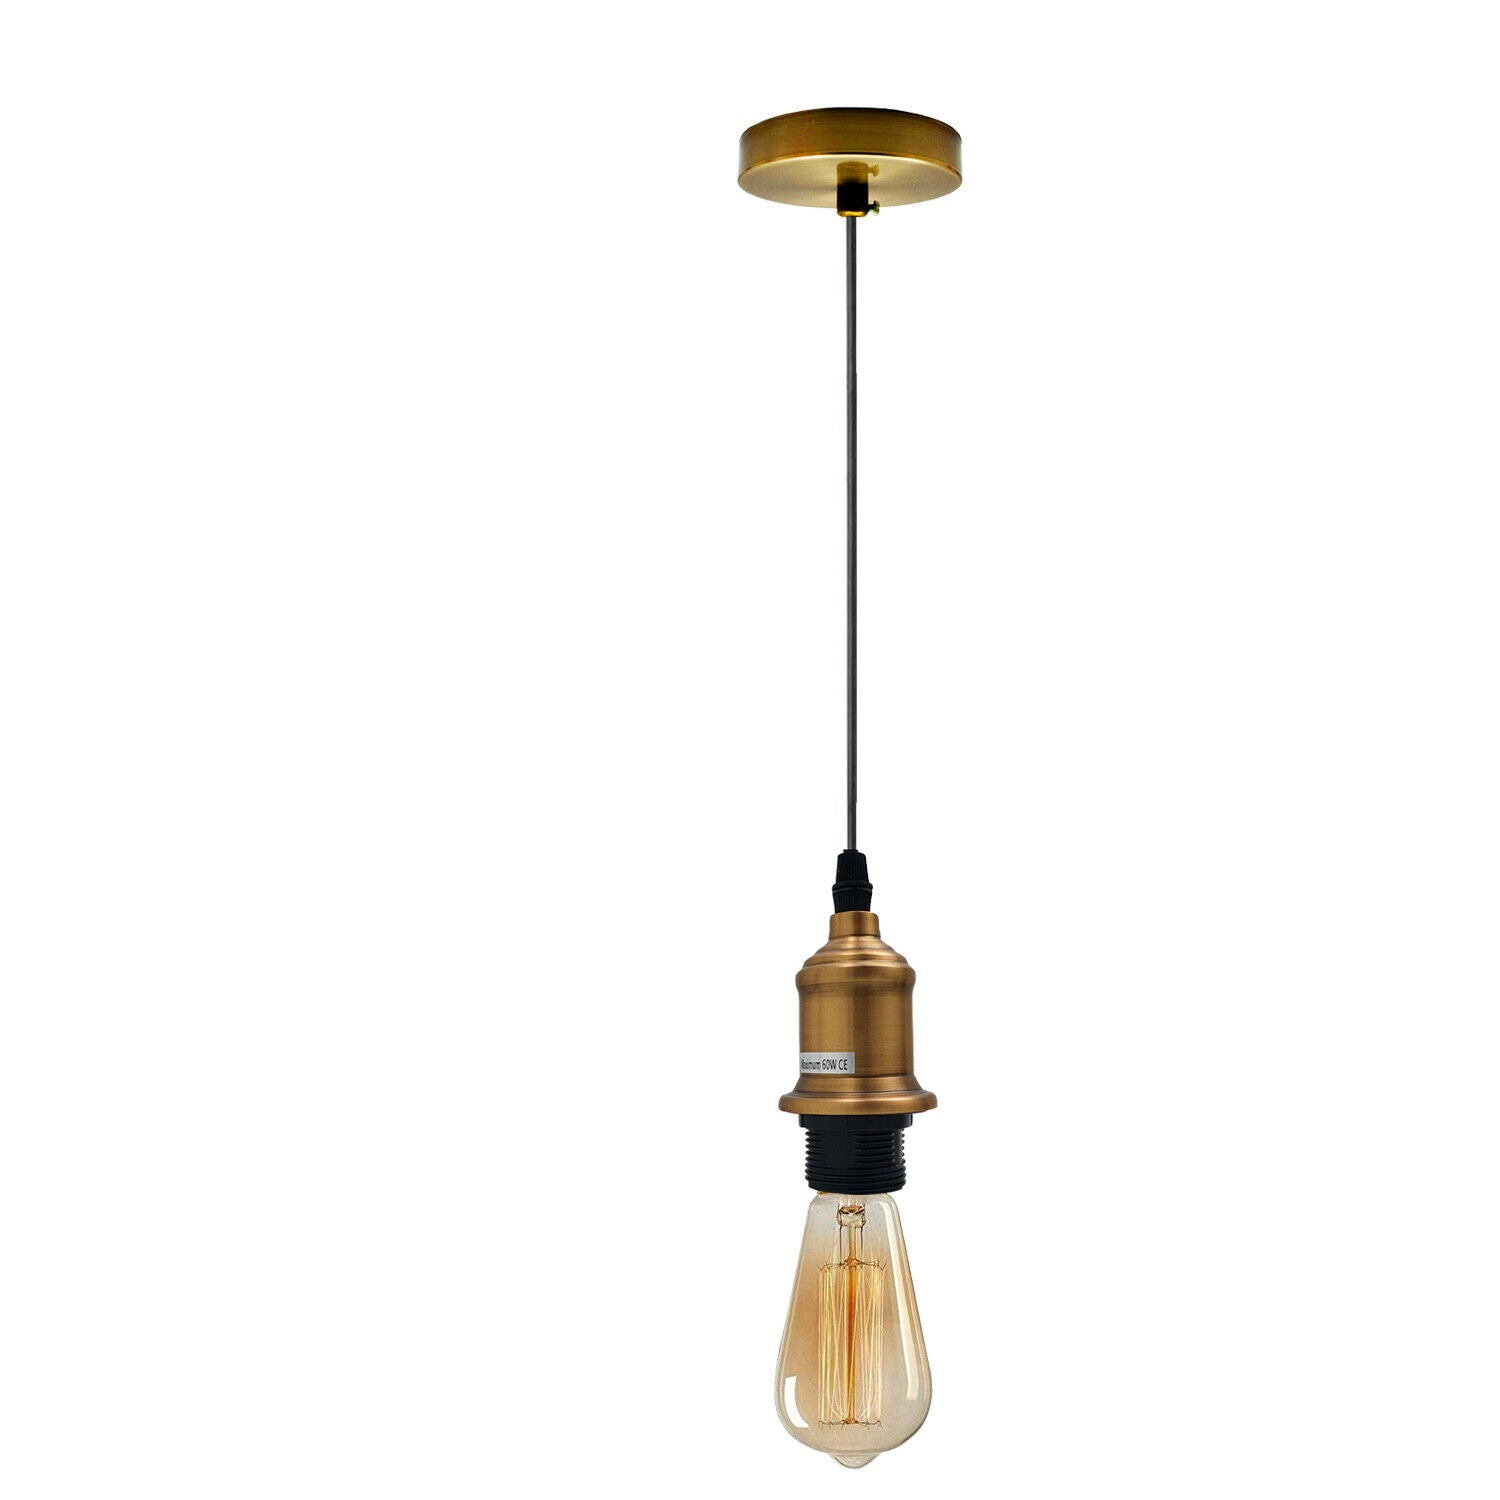 New E27 Ceiling Rose Light Fitting Vintage Industrial Pendant Lamp Bulb Holder